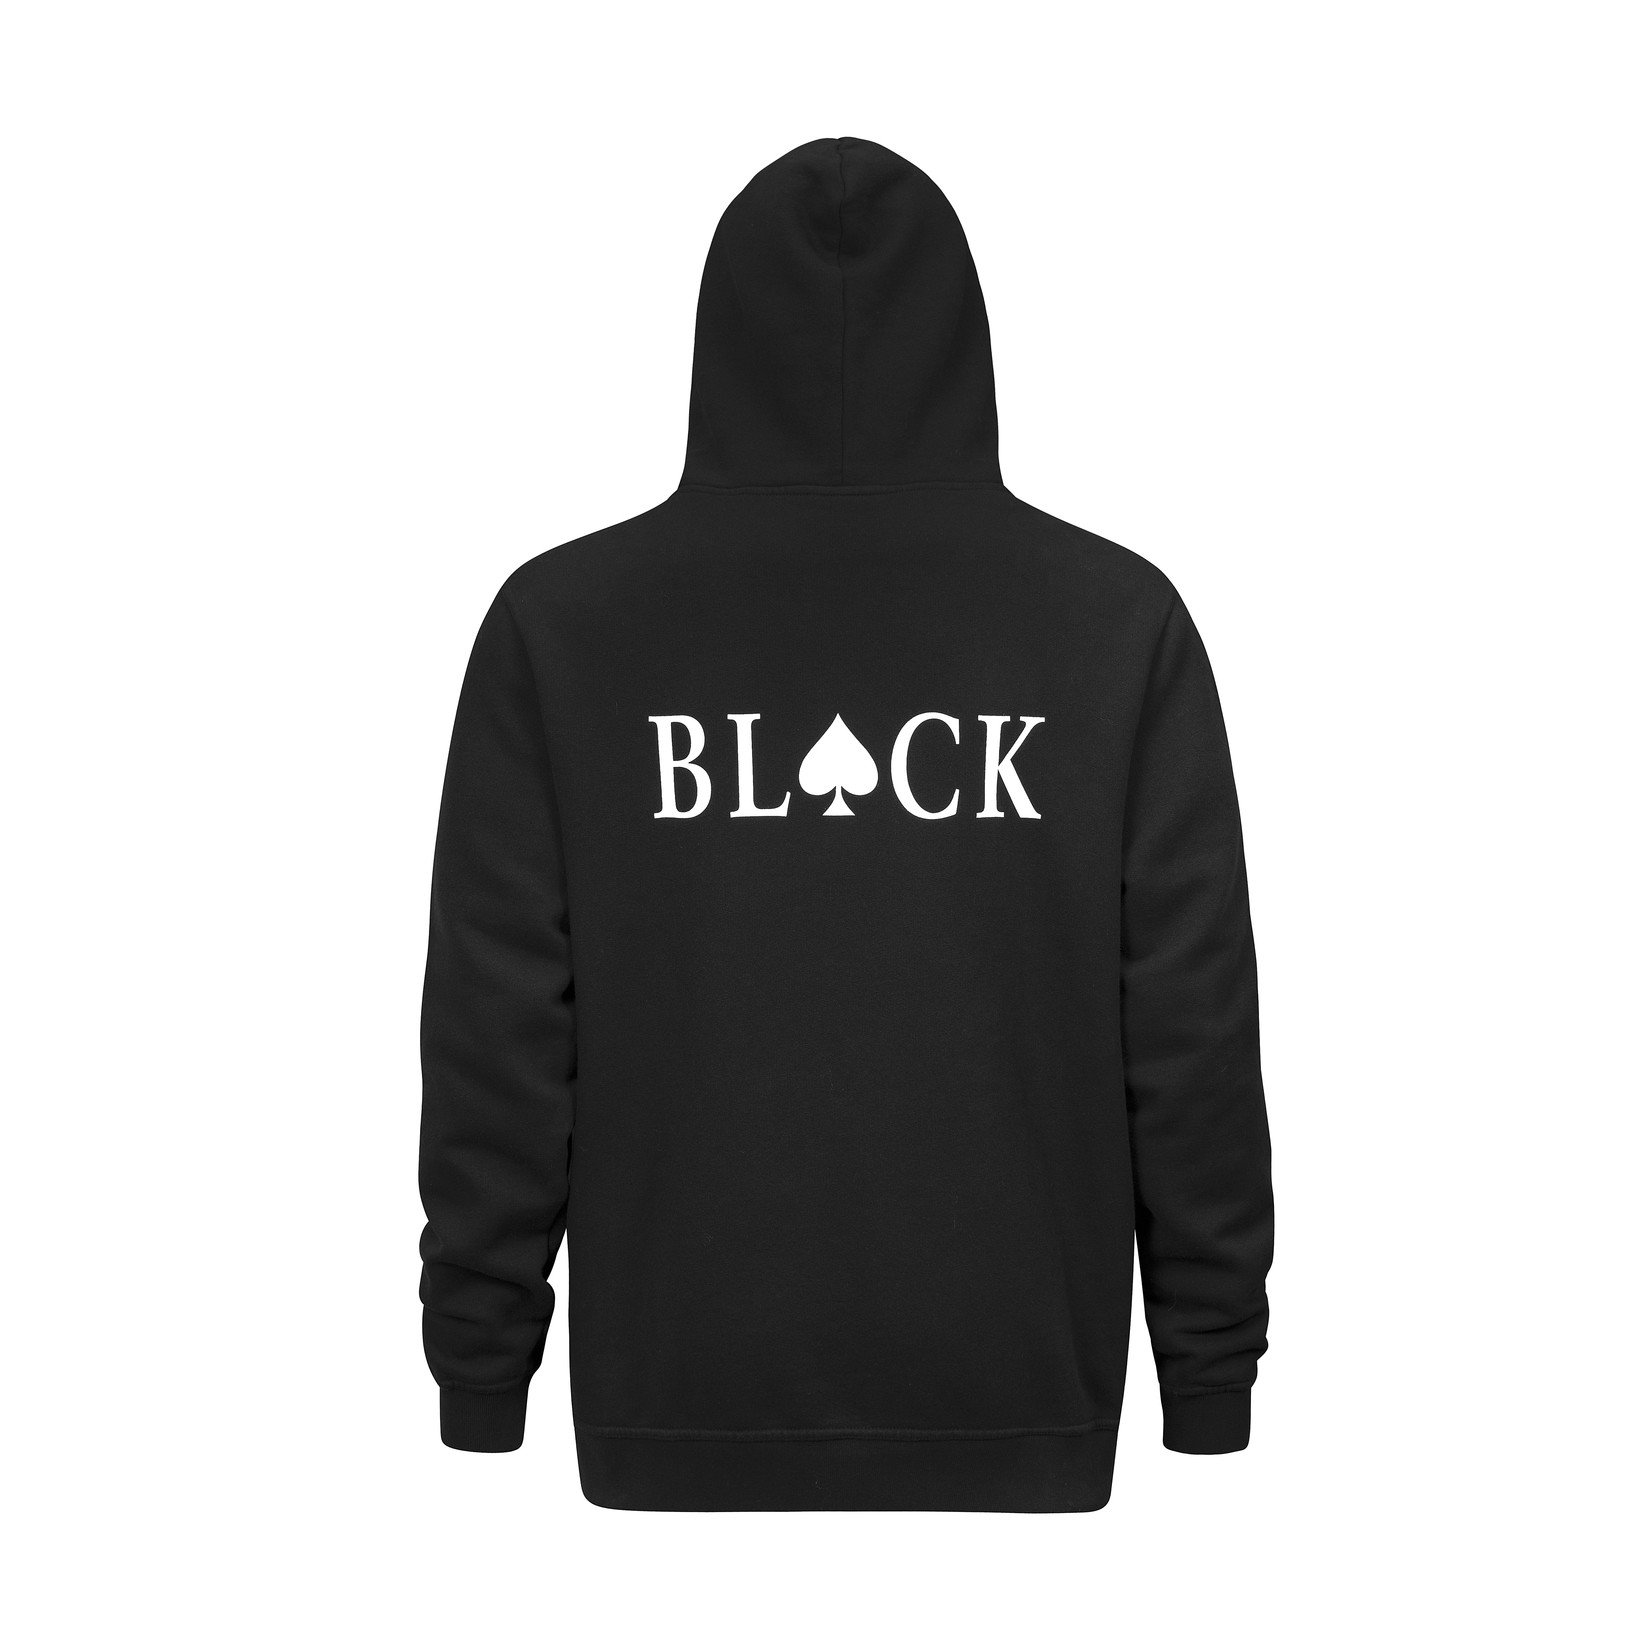 Black Hoodie with designer brand names  Black hoodie, Long black hoodie,  Hoodies